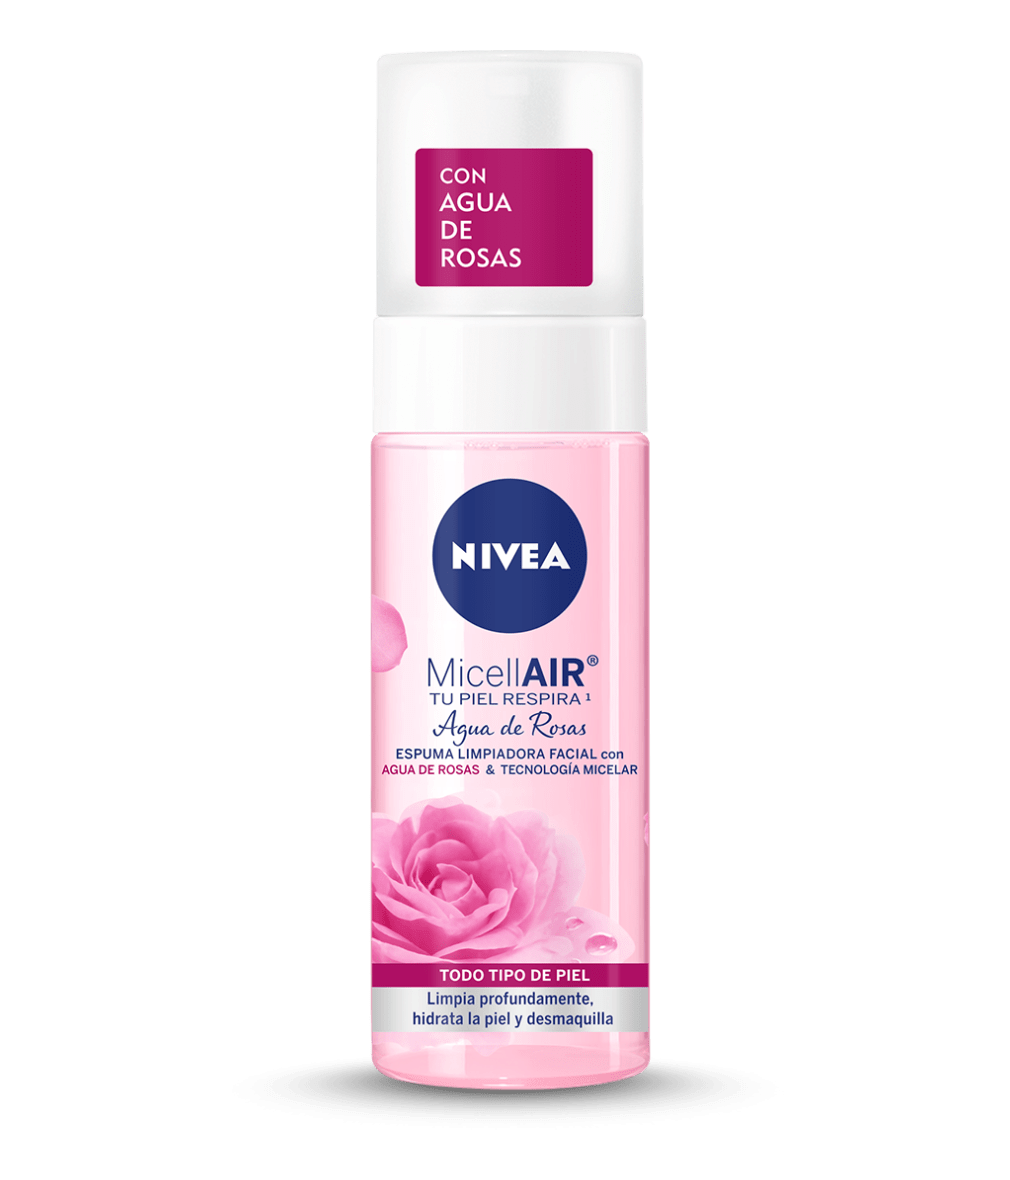 Espuma Limpiadora Facial con Agua de Rosas 150 ML - NIVEA